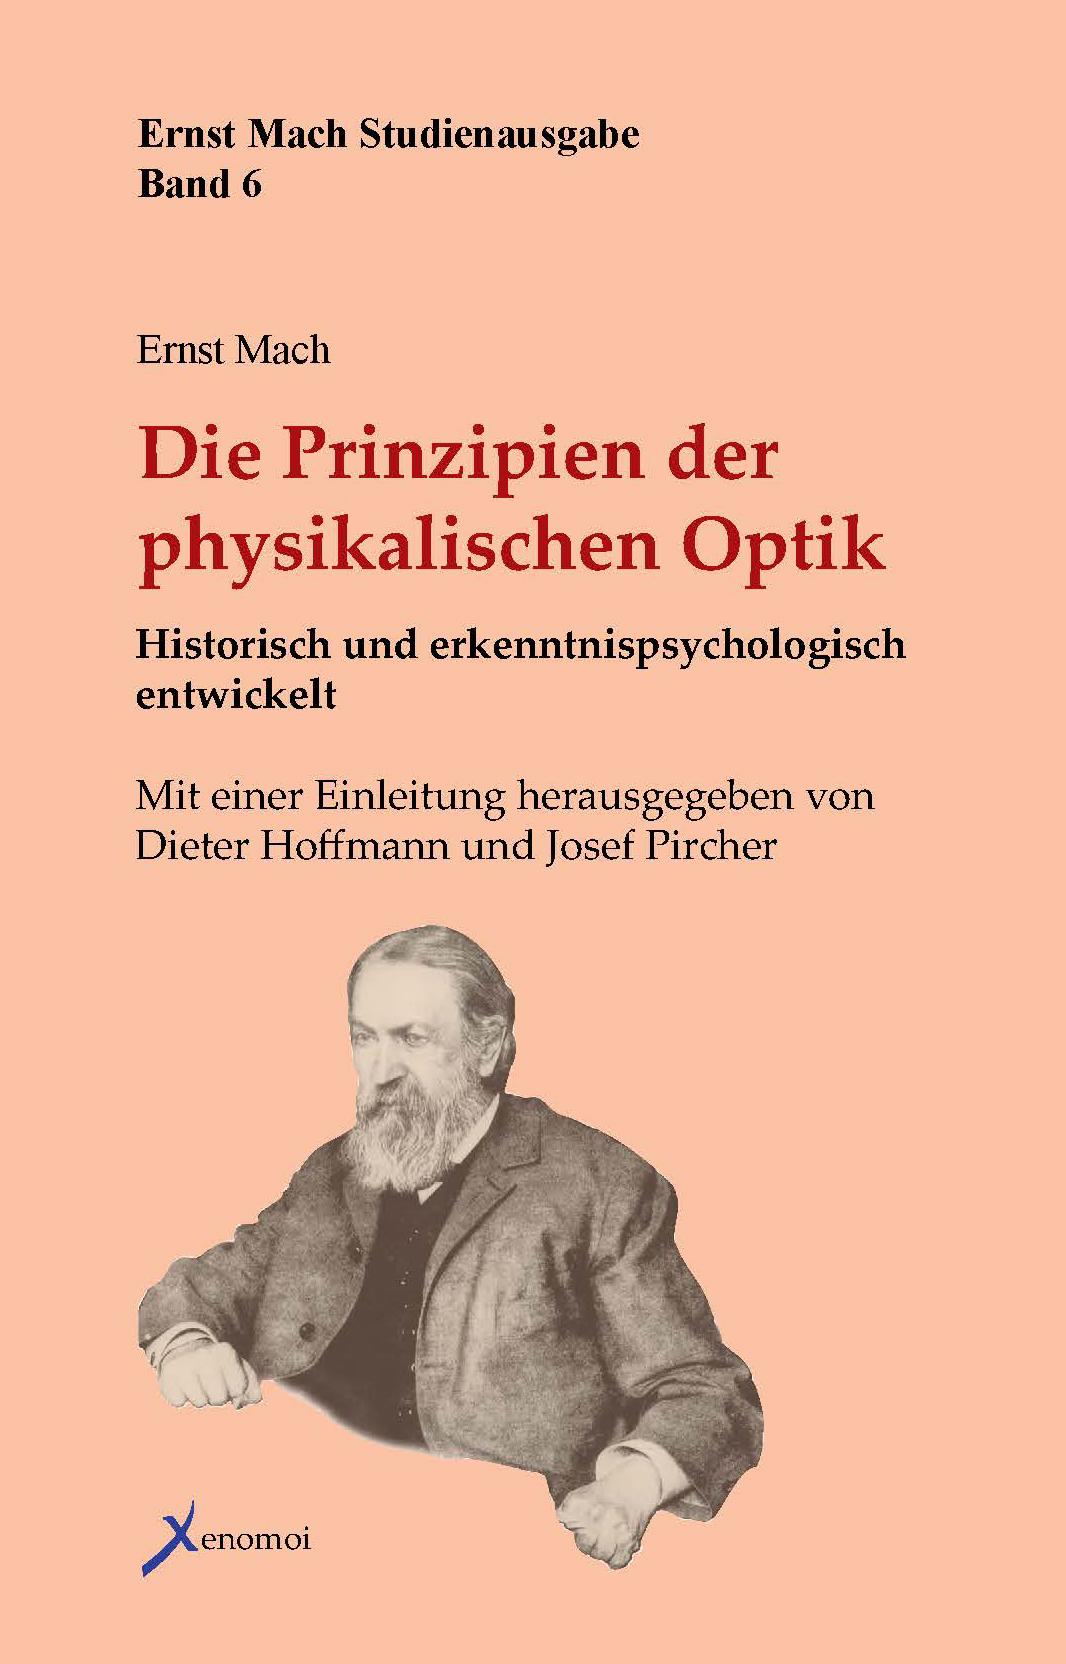 Ernst Mach: Die Prinzipien der physikalischen Optik. Historisch und erkenntnispsychologisch entwicke